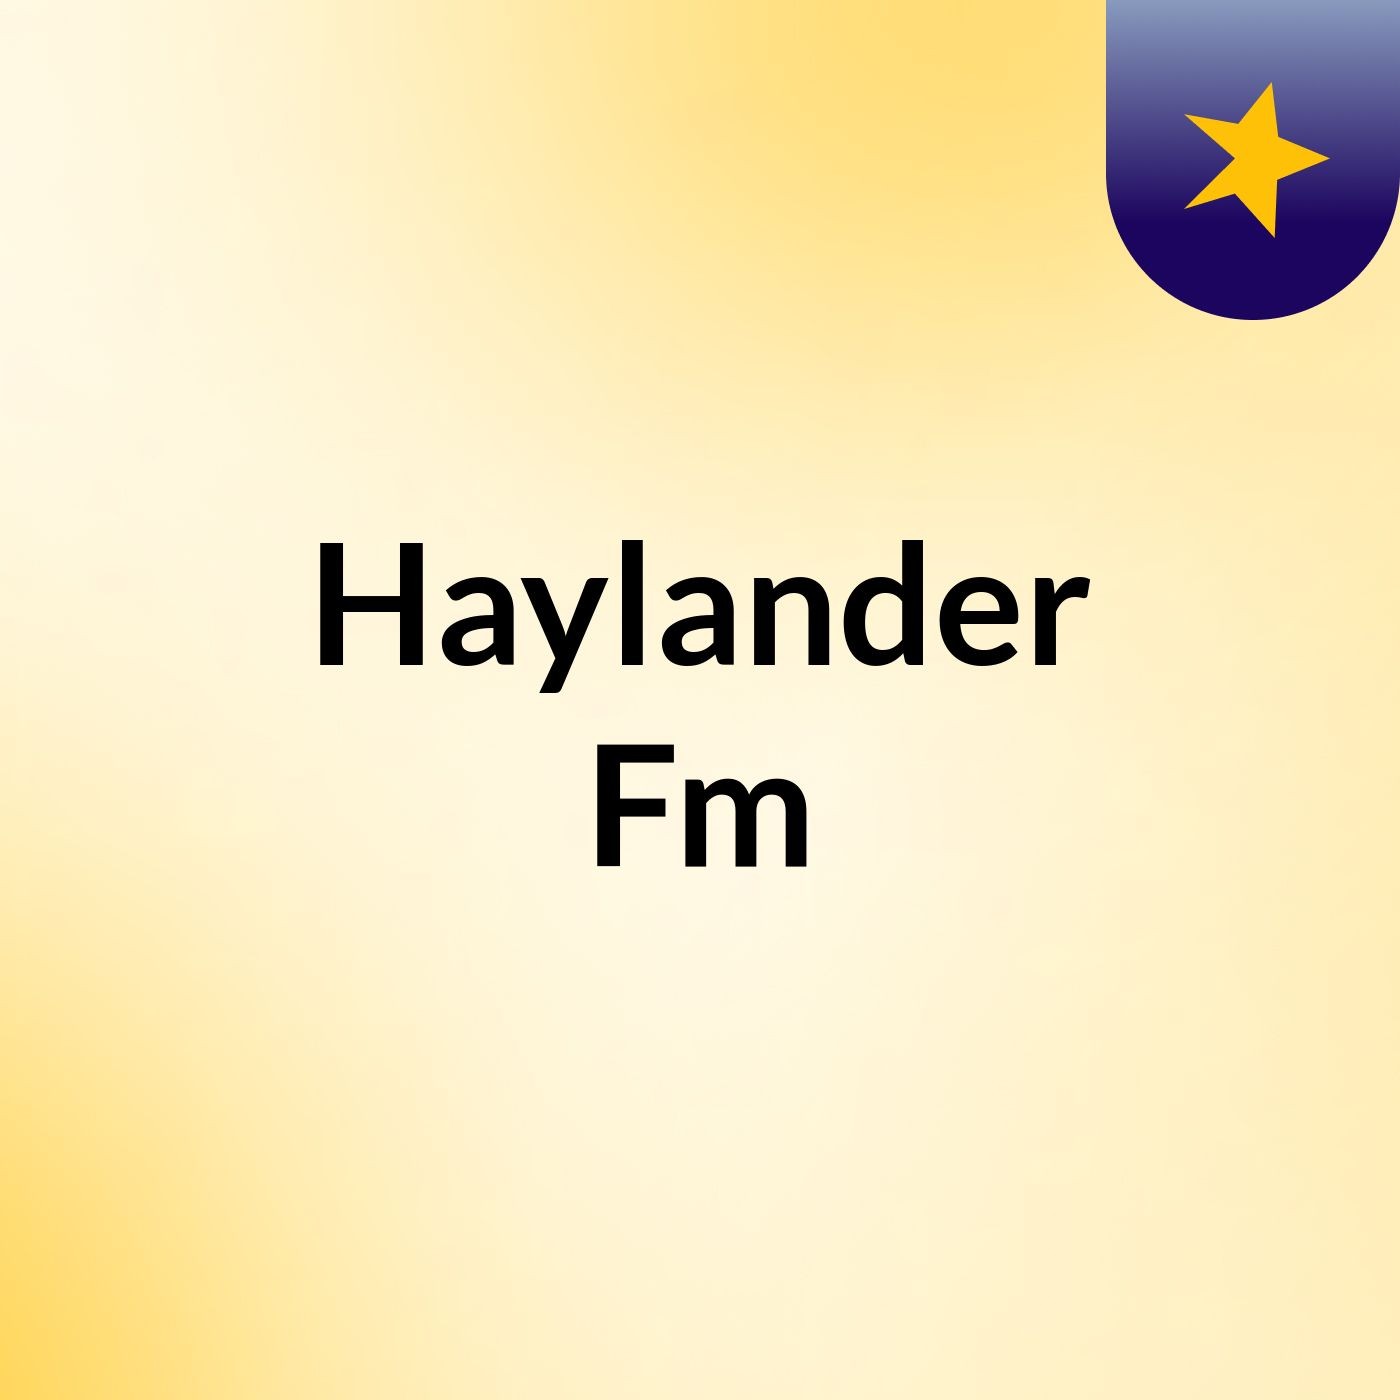 Haylander Fm